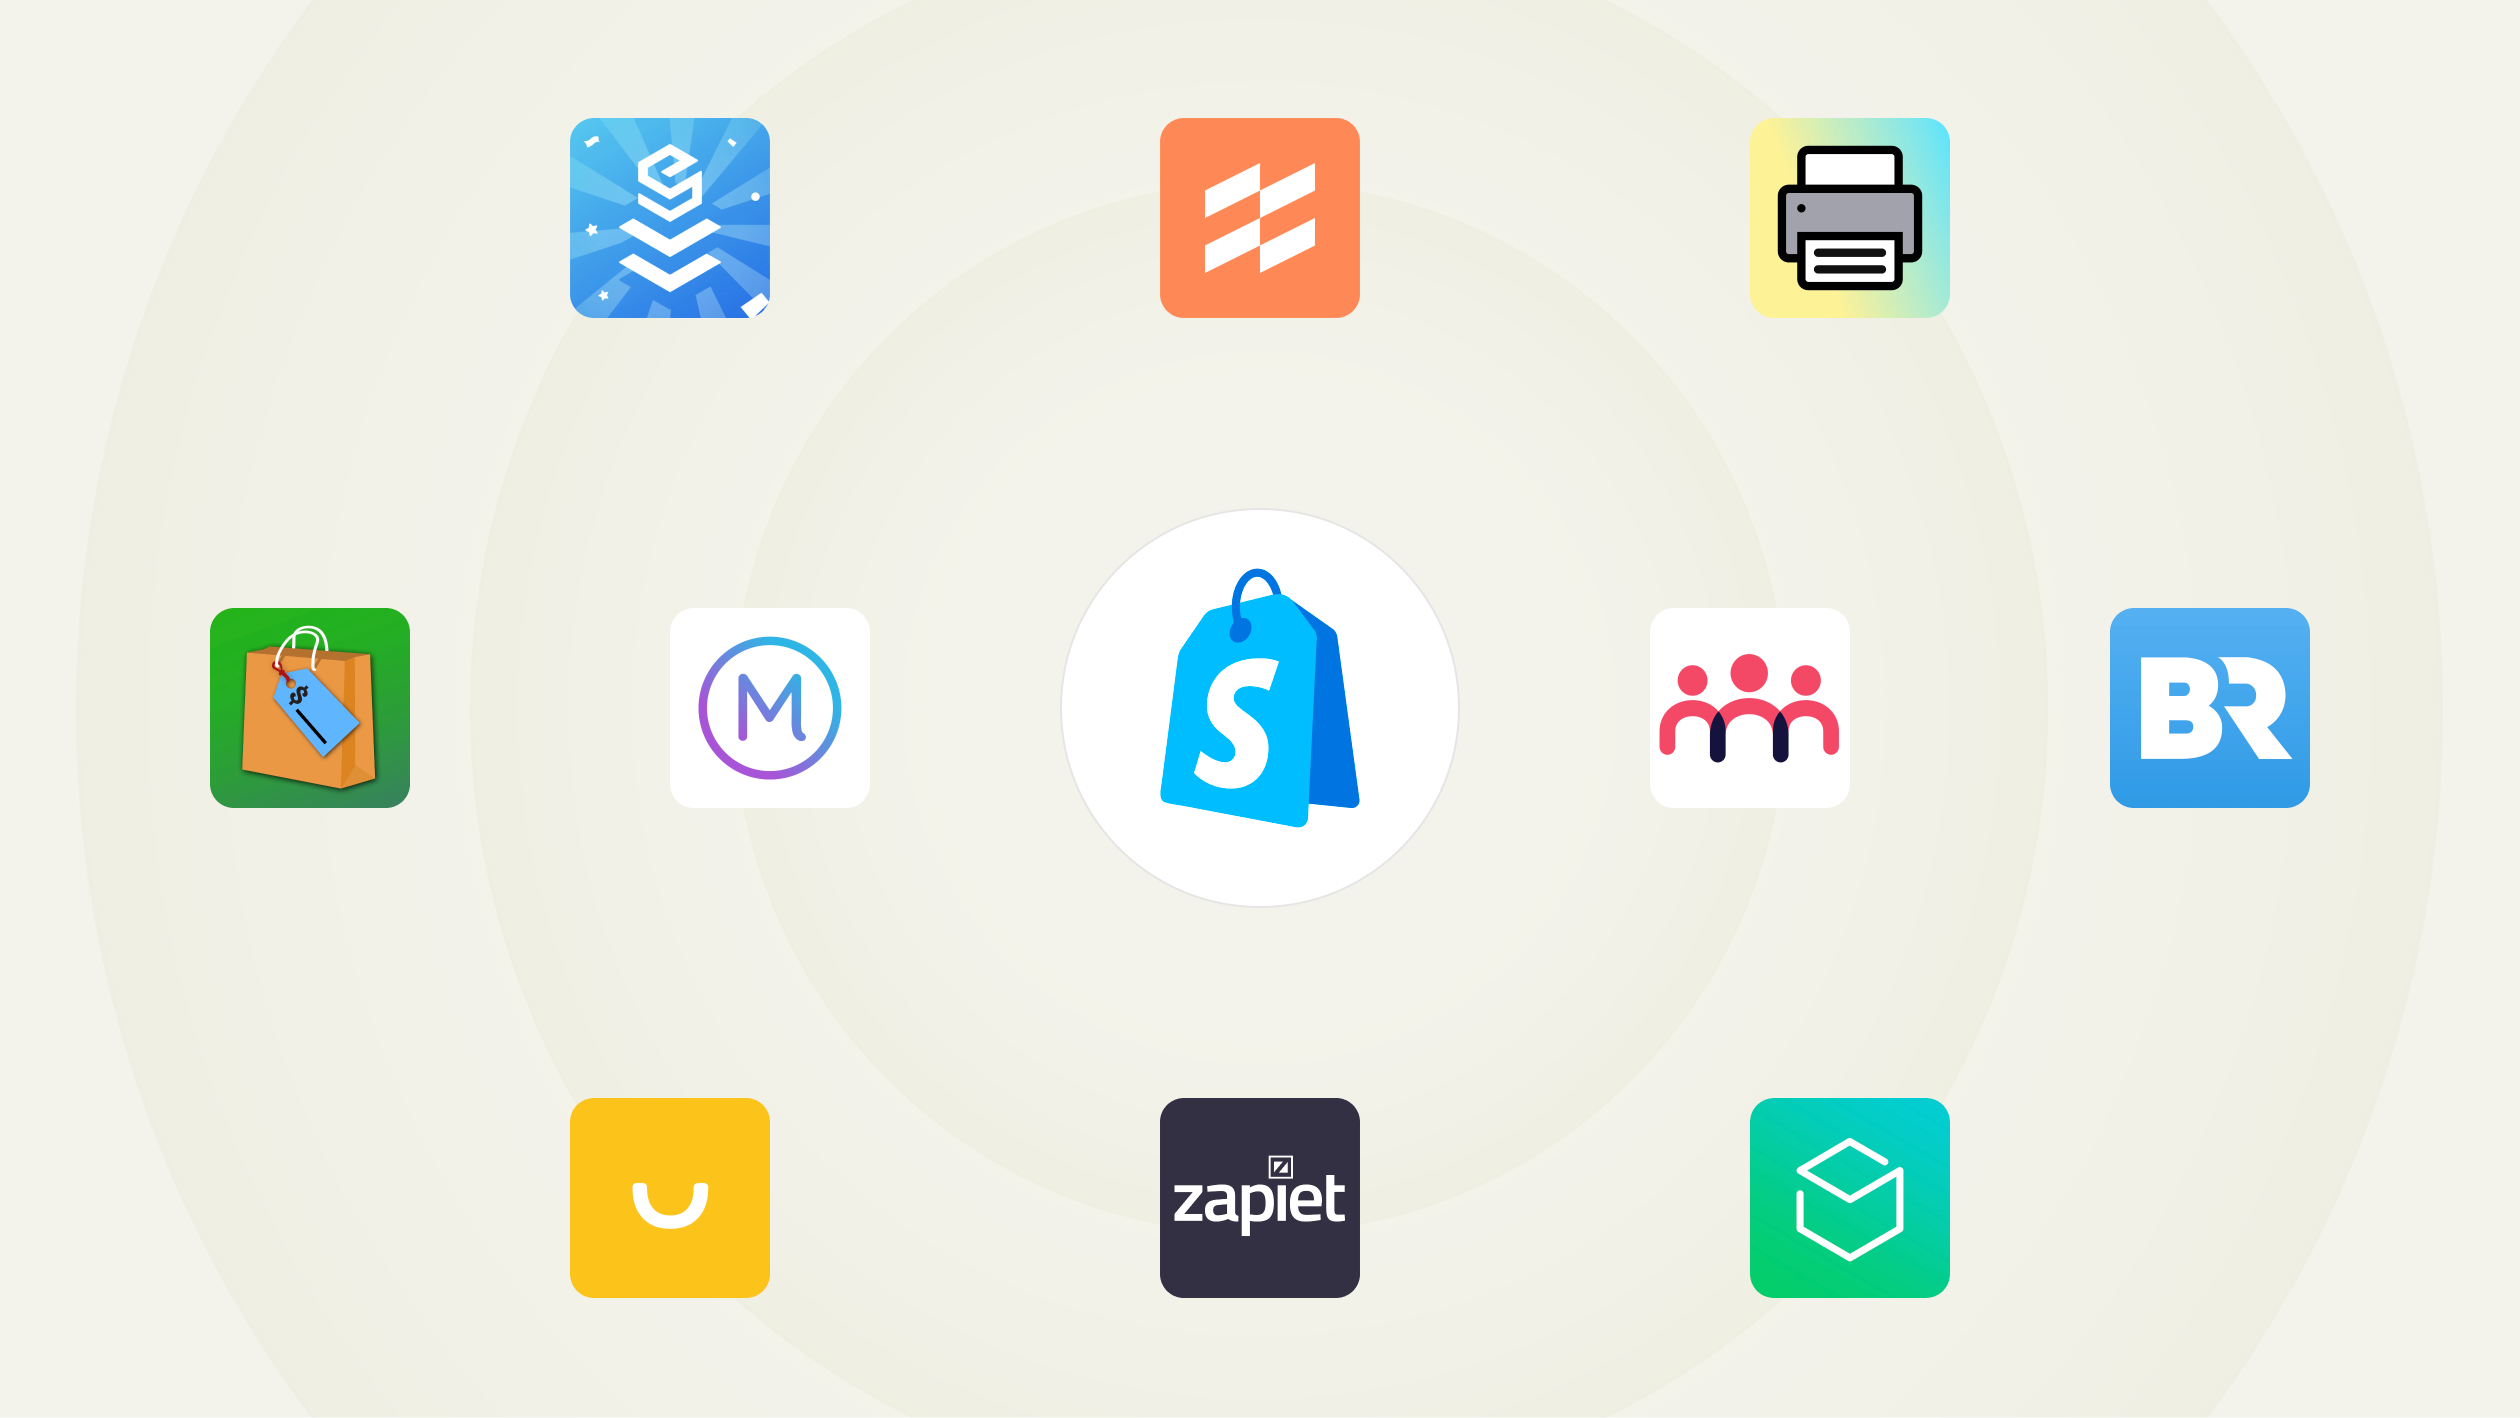 Um conjunto de ícones de apps. No meio deles, está o logo do Shopify PDV. Ao redor desse logo, aparecem os ícones de apps bastante conhecidos: EasyTeam, Filljoy, Zapiet, Optizio, Stocky, Order Printer, Smile, Better Reports, Marsello e Endear.